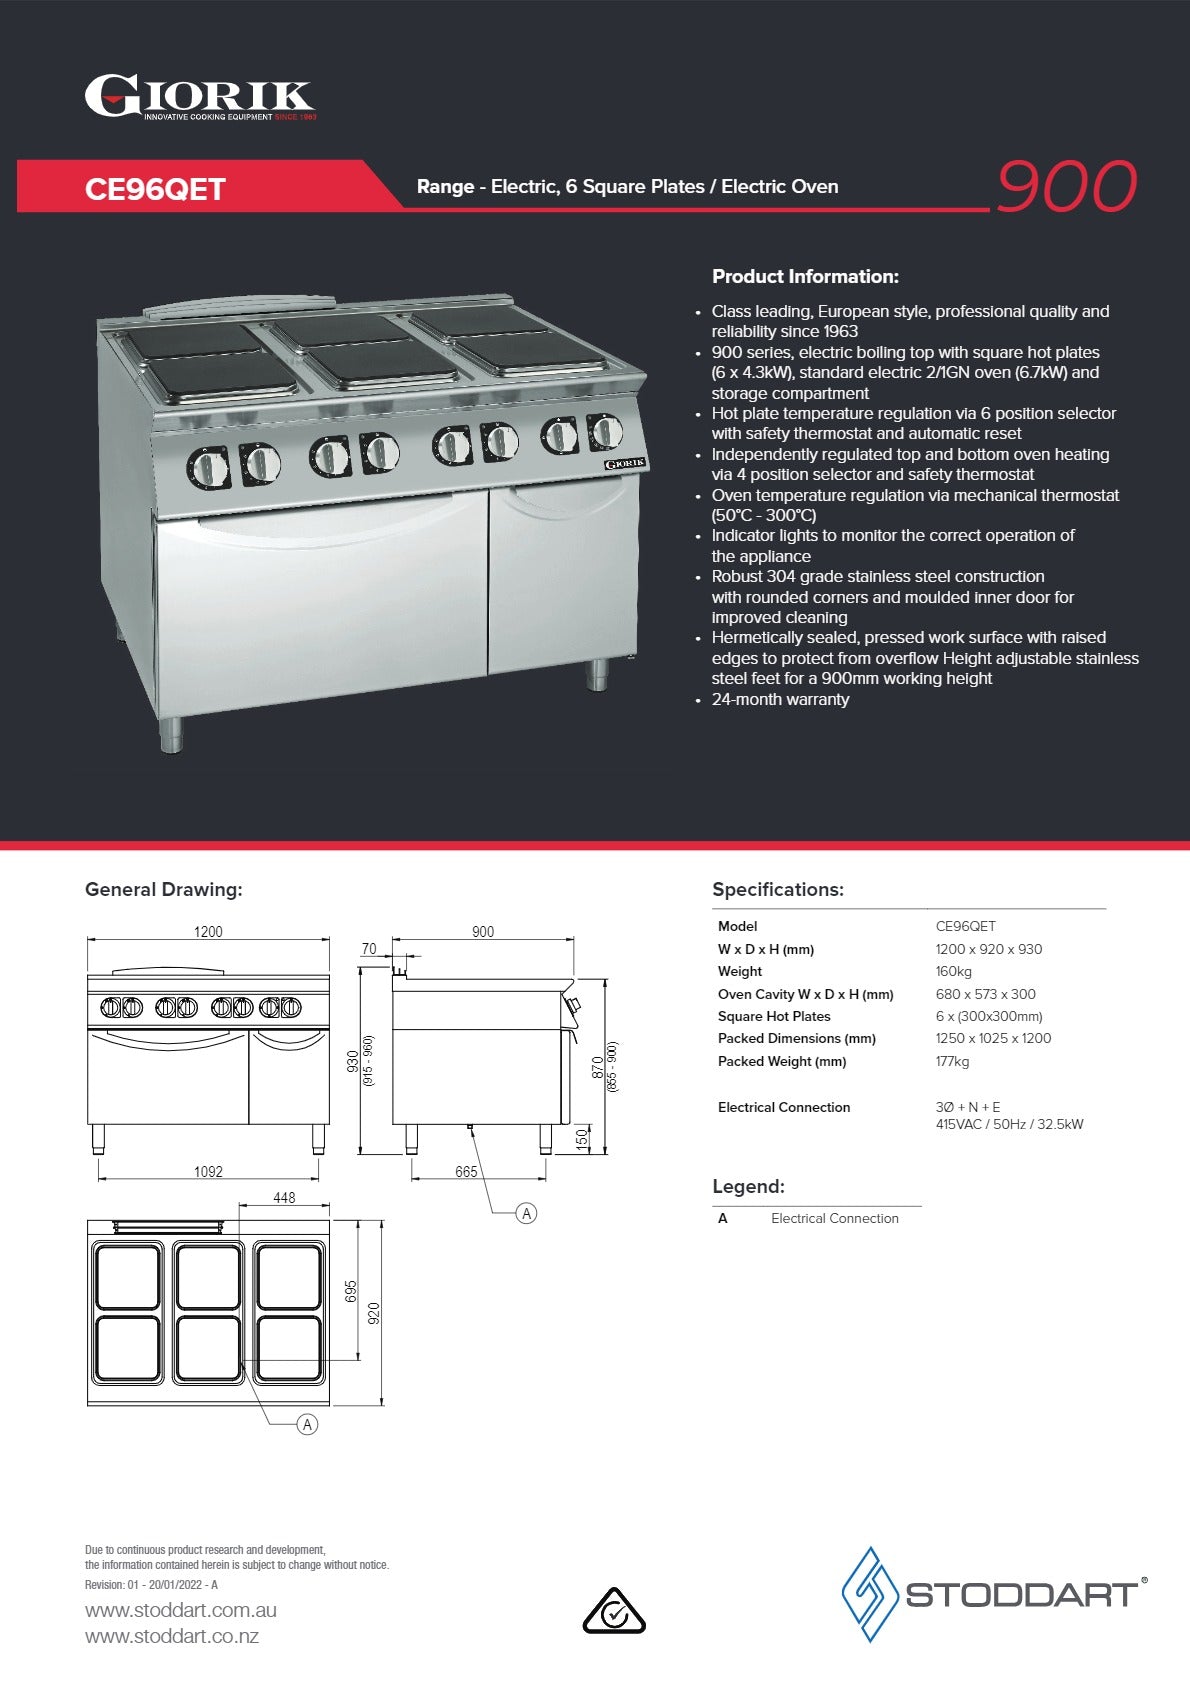 Thumbnail - Giorik CE96QET - Range Oven